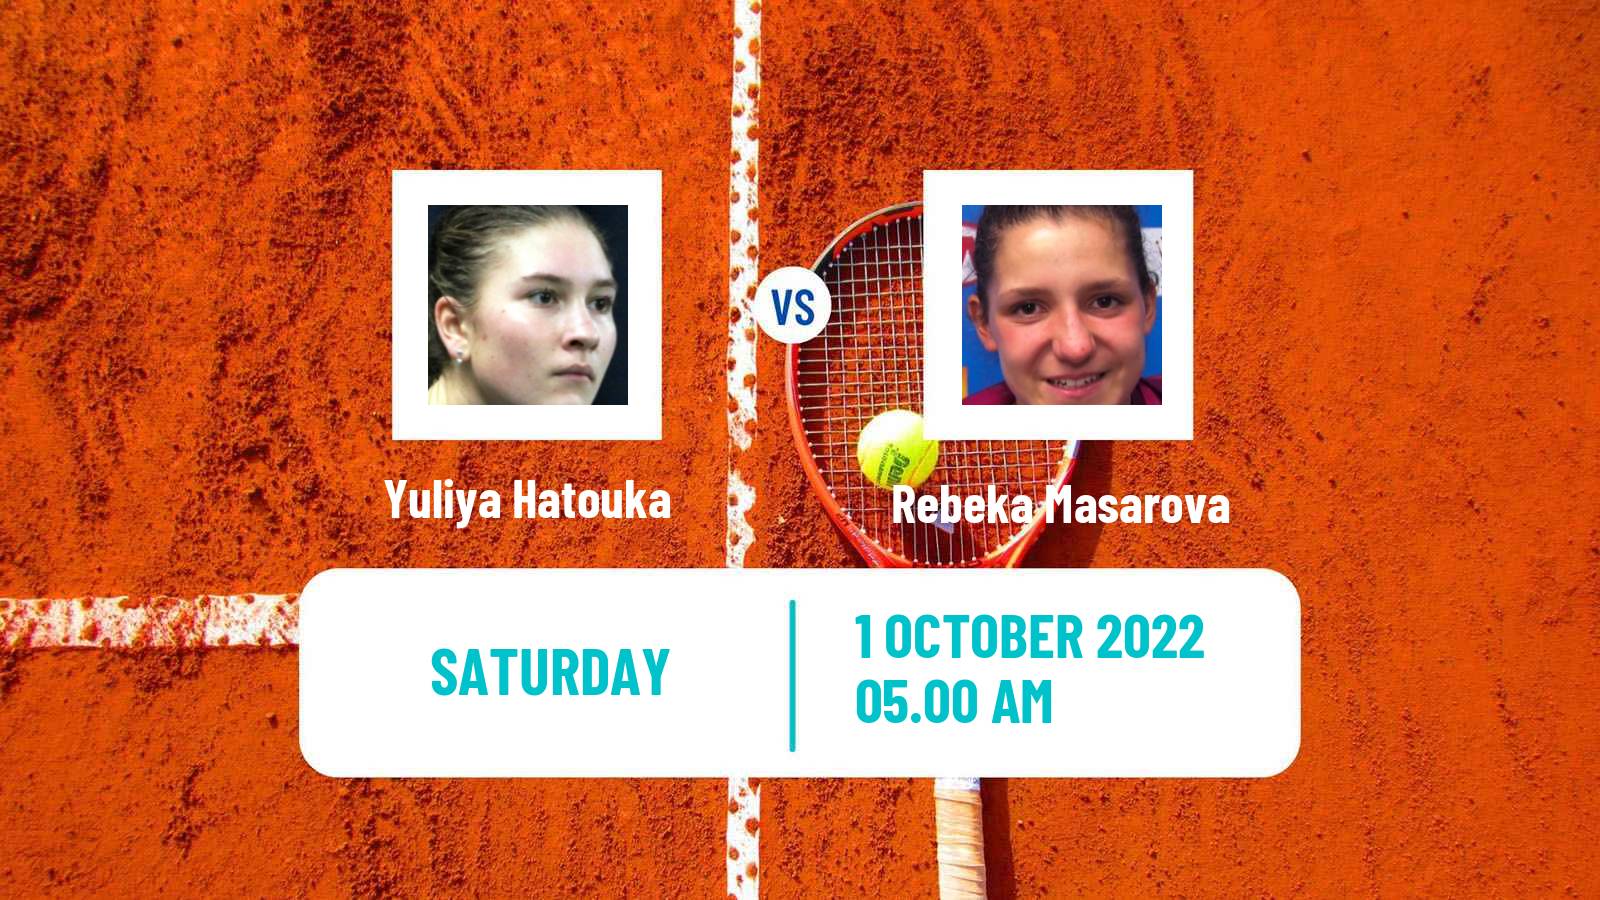 Tennis WTA Monastir Yuliya Hatouka - Rebeka Masarova